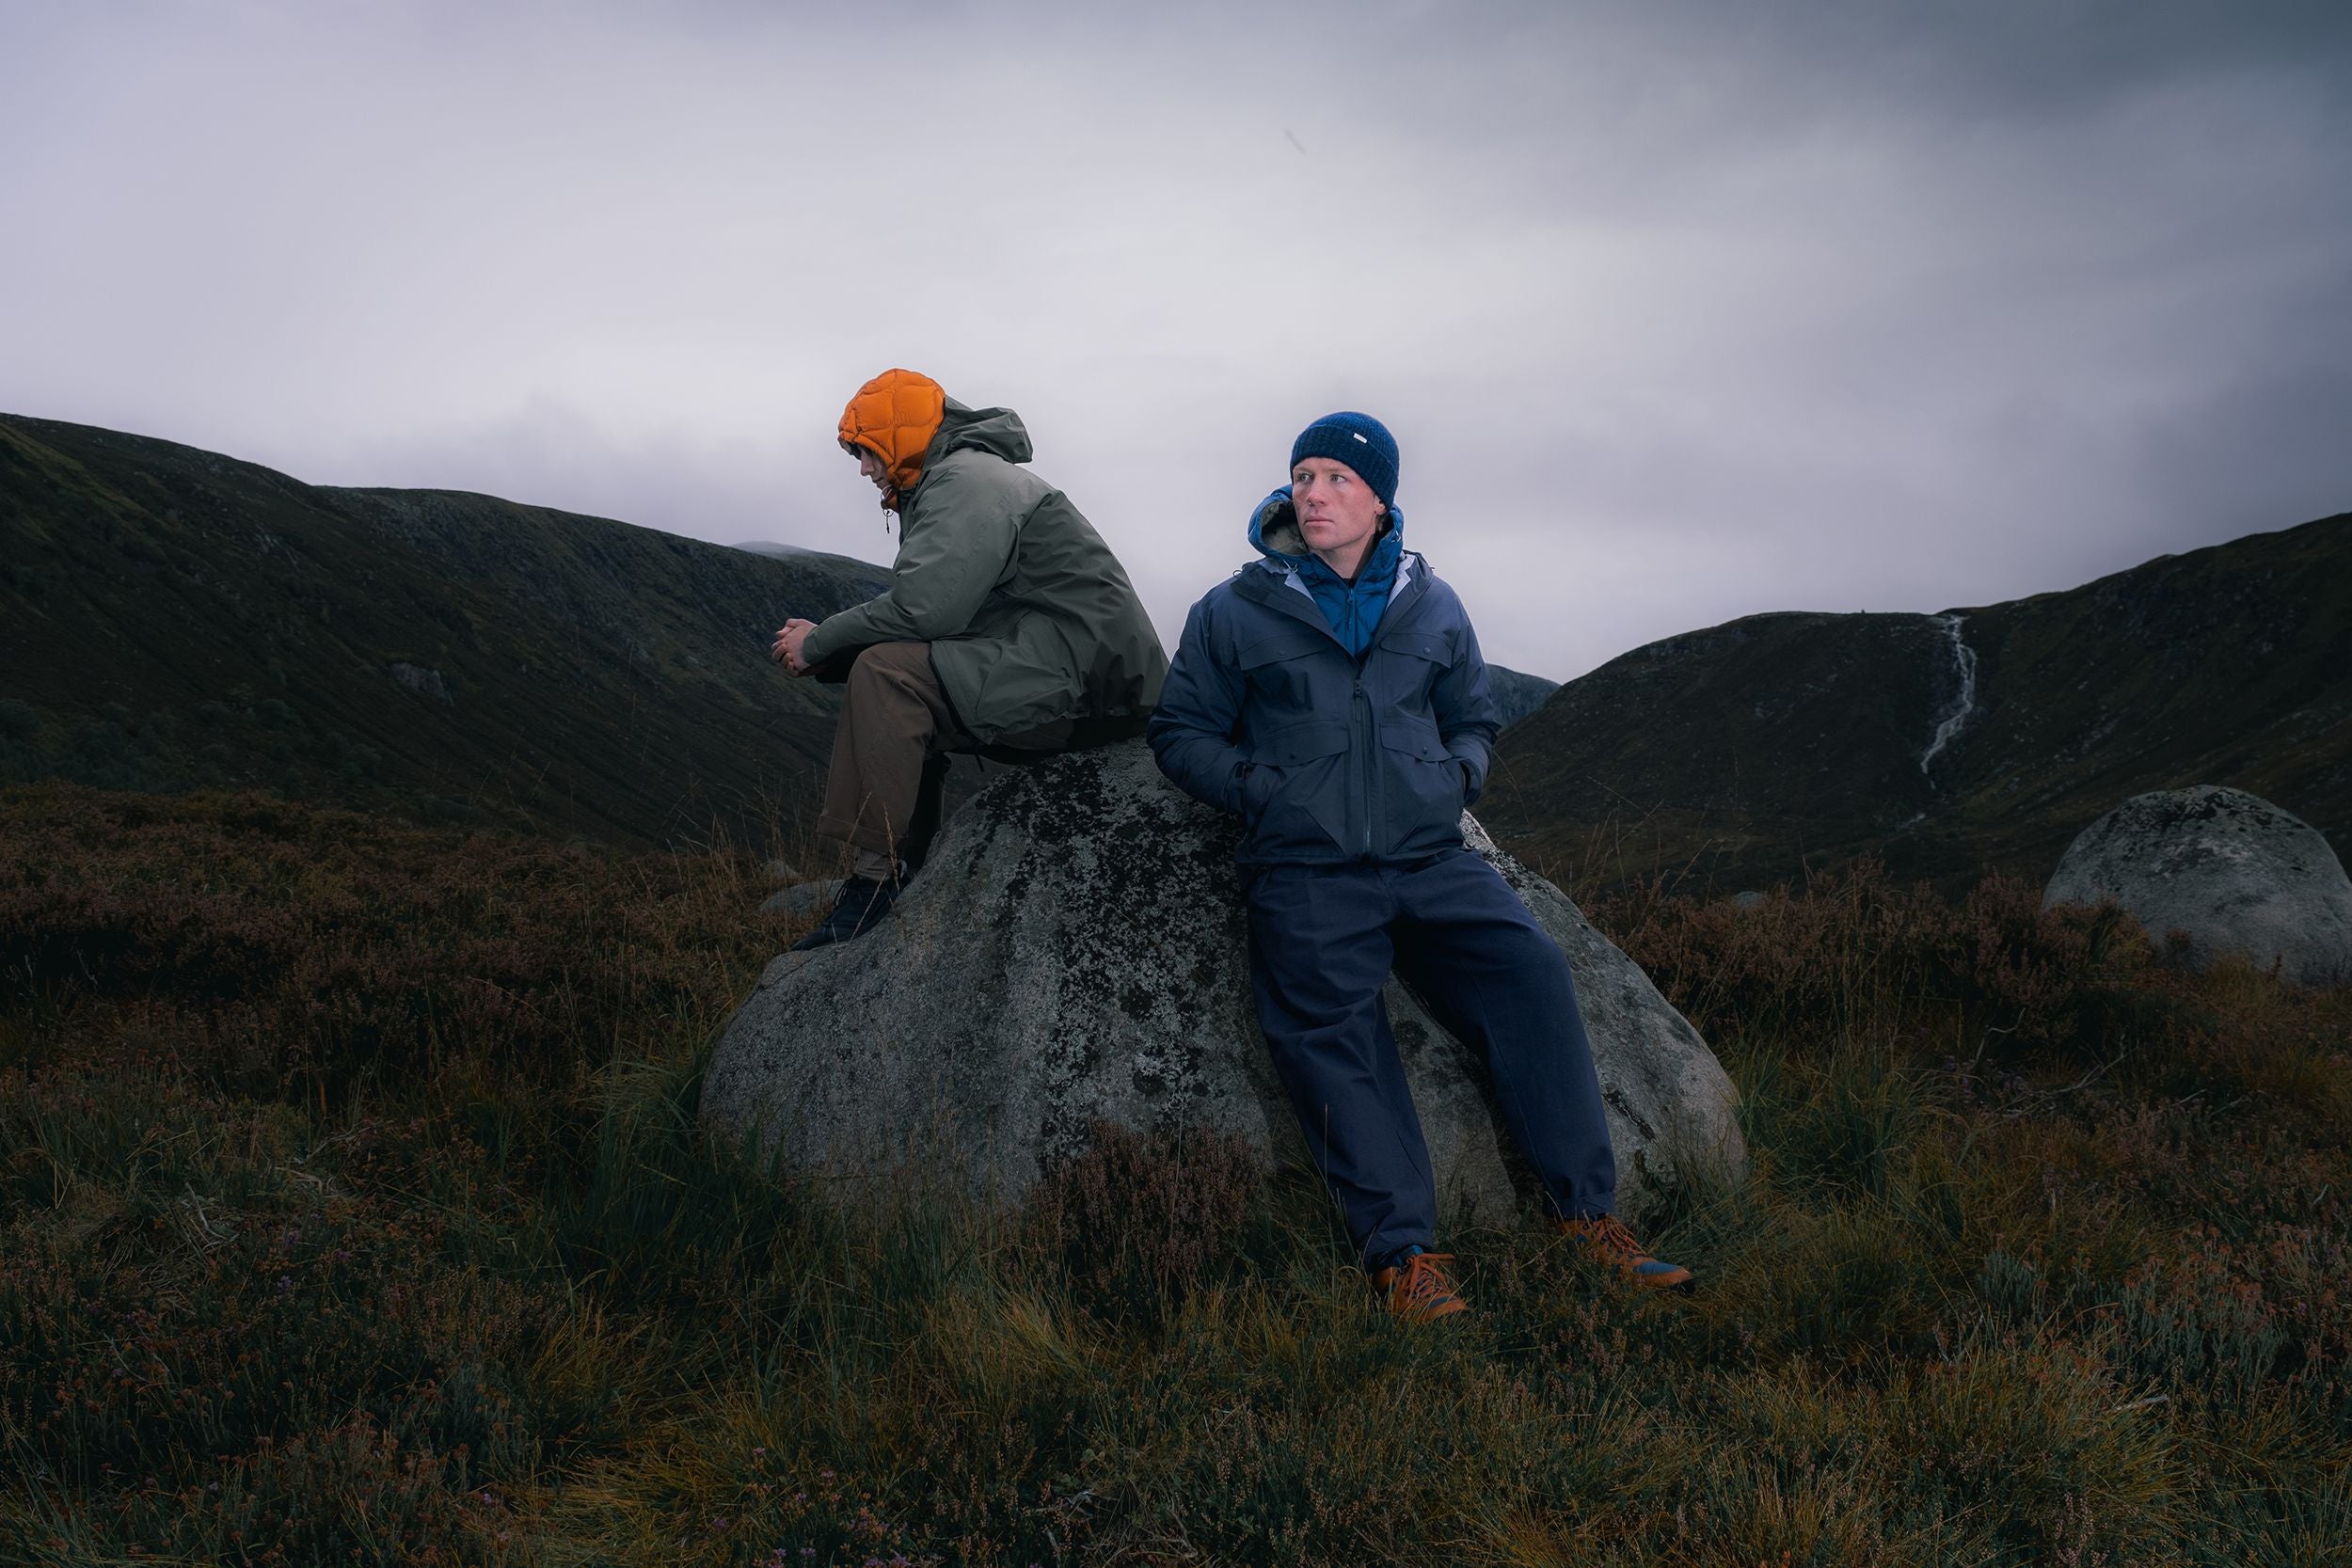 Two men hiking in Scotland wearing waterproof jackets by designer brand KESTIN